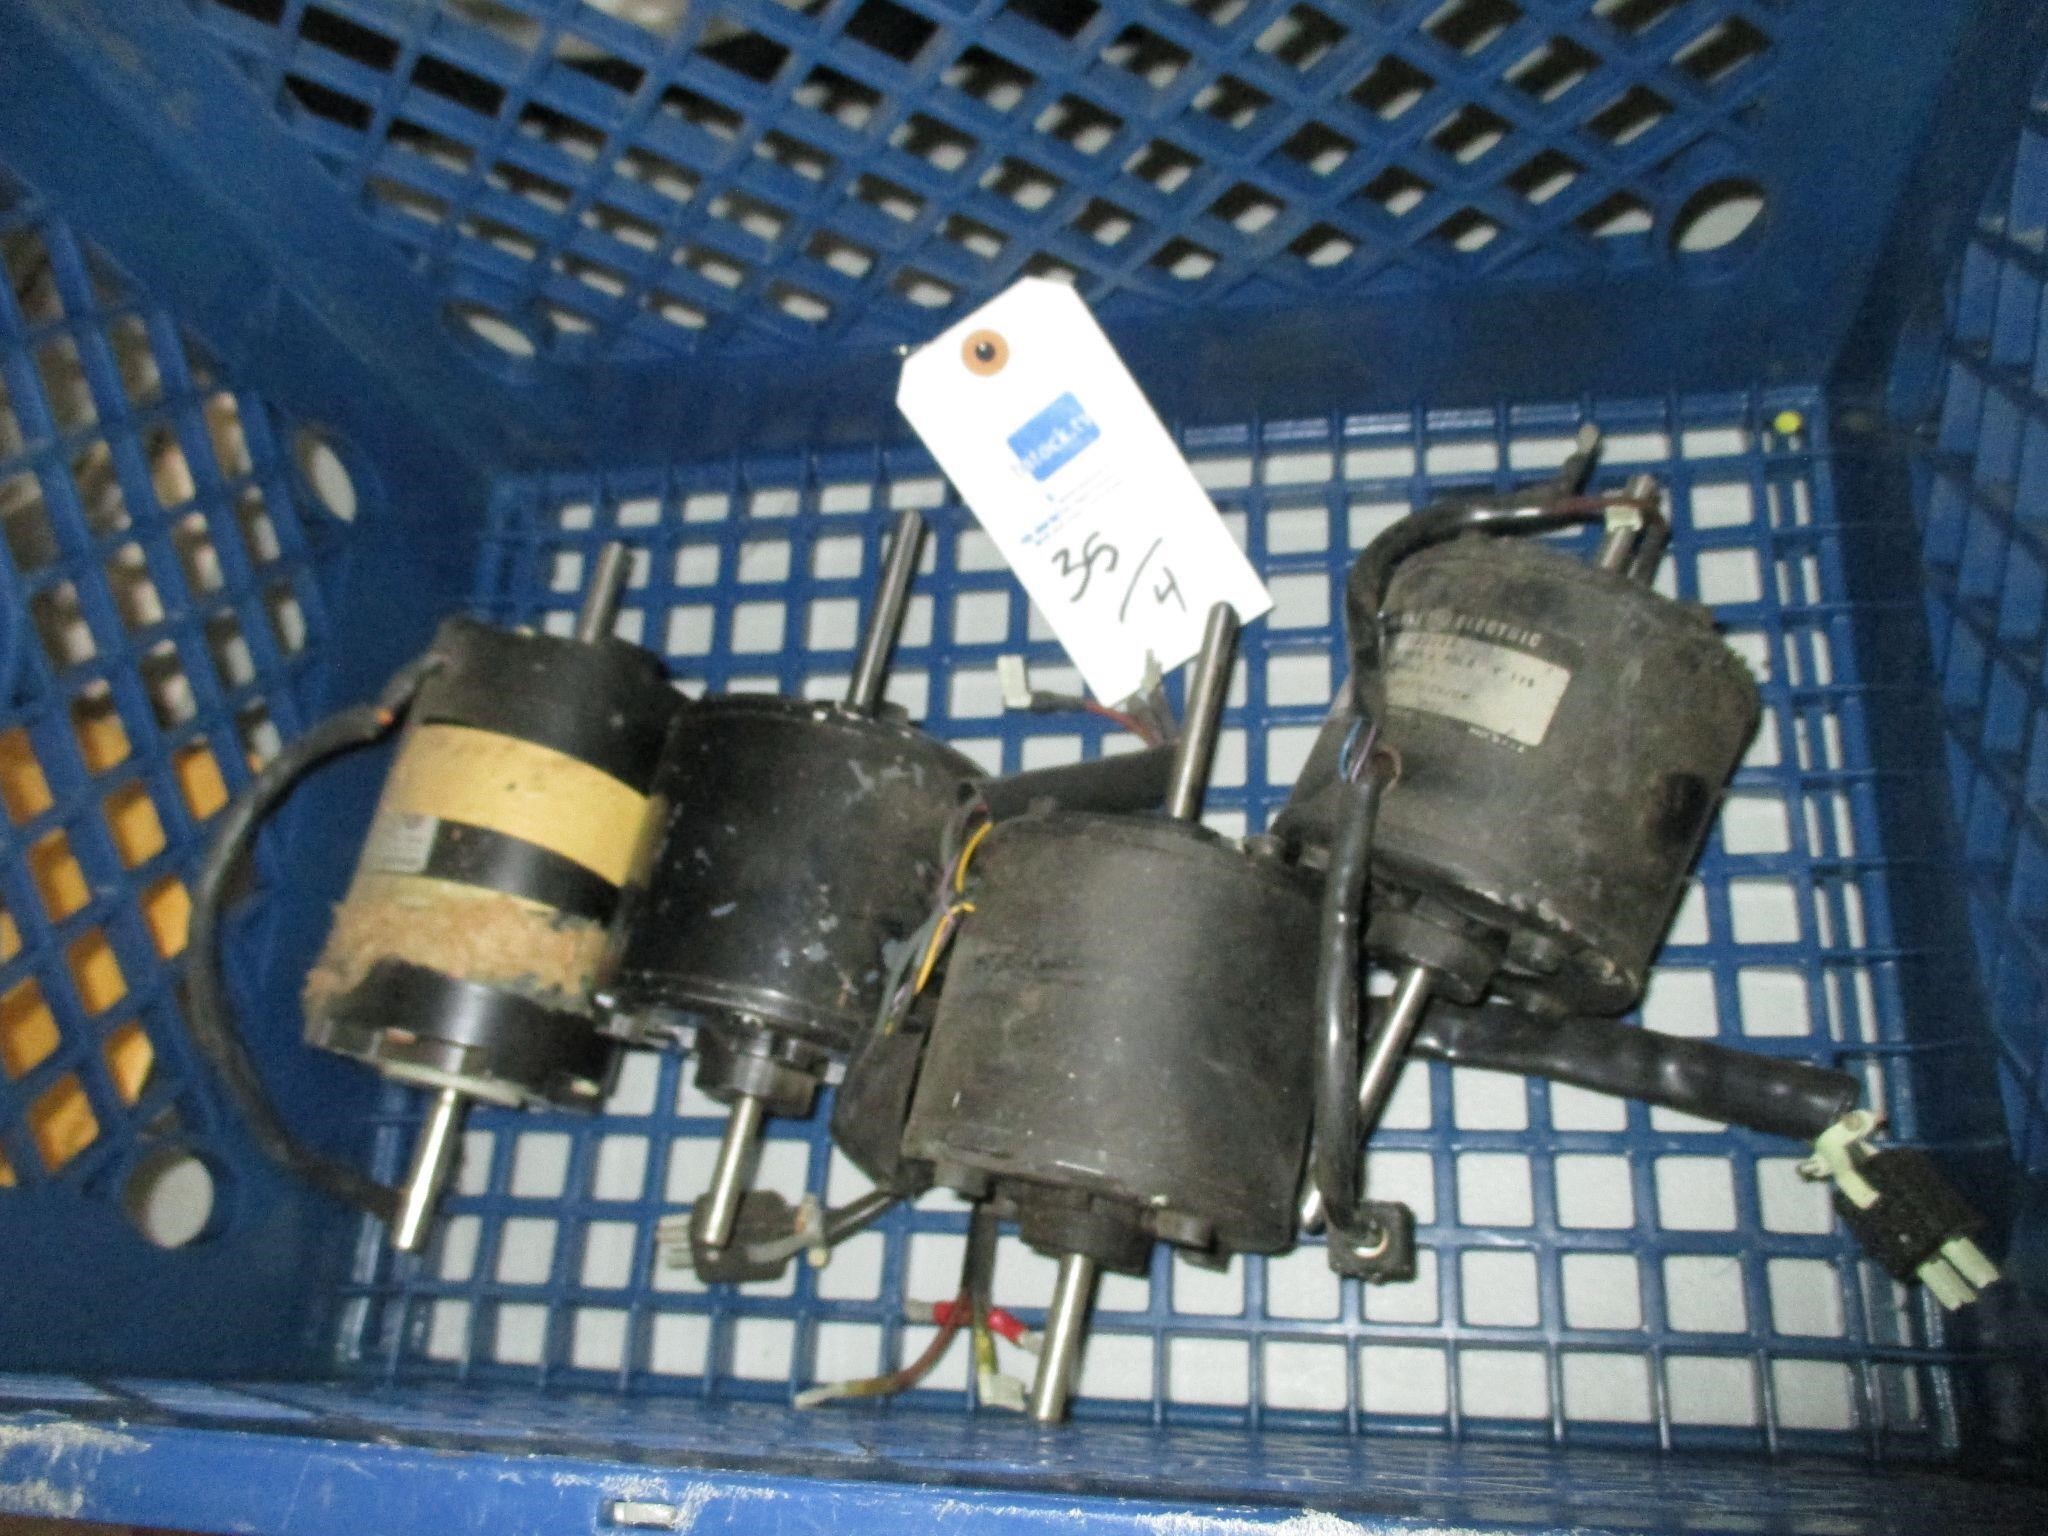 Qty of 4 - Ampex motors